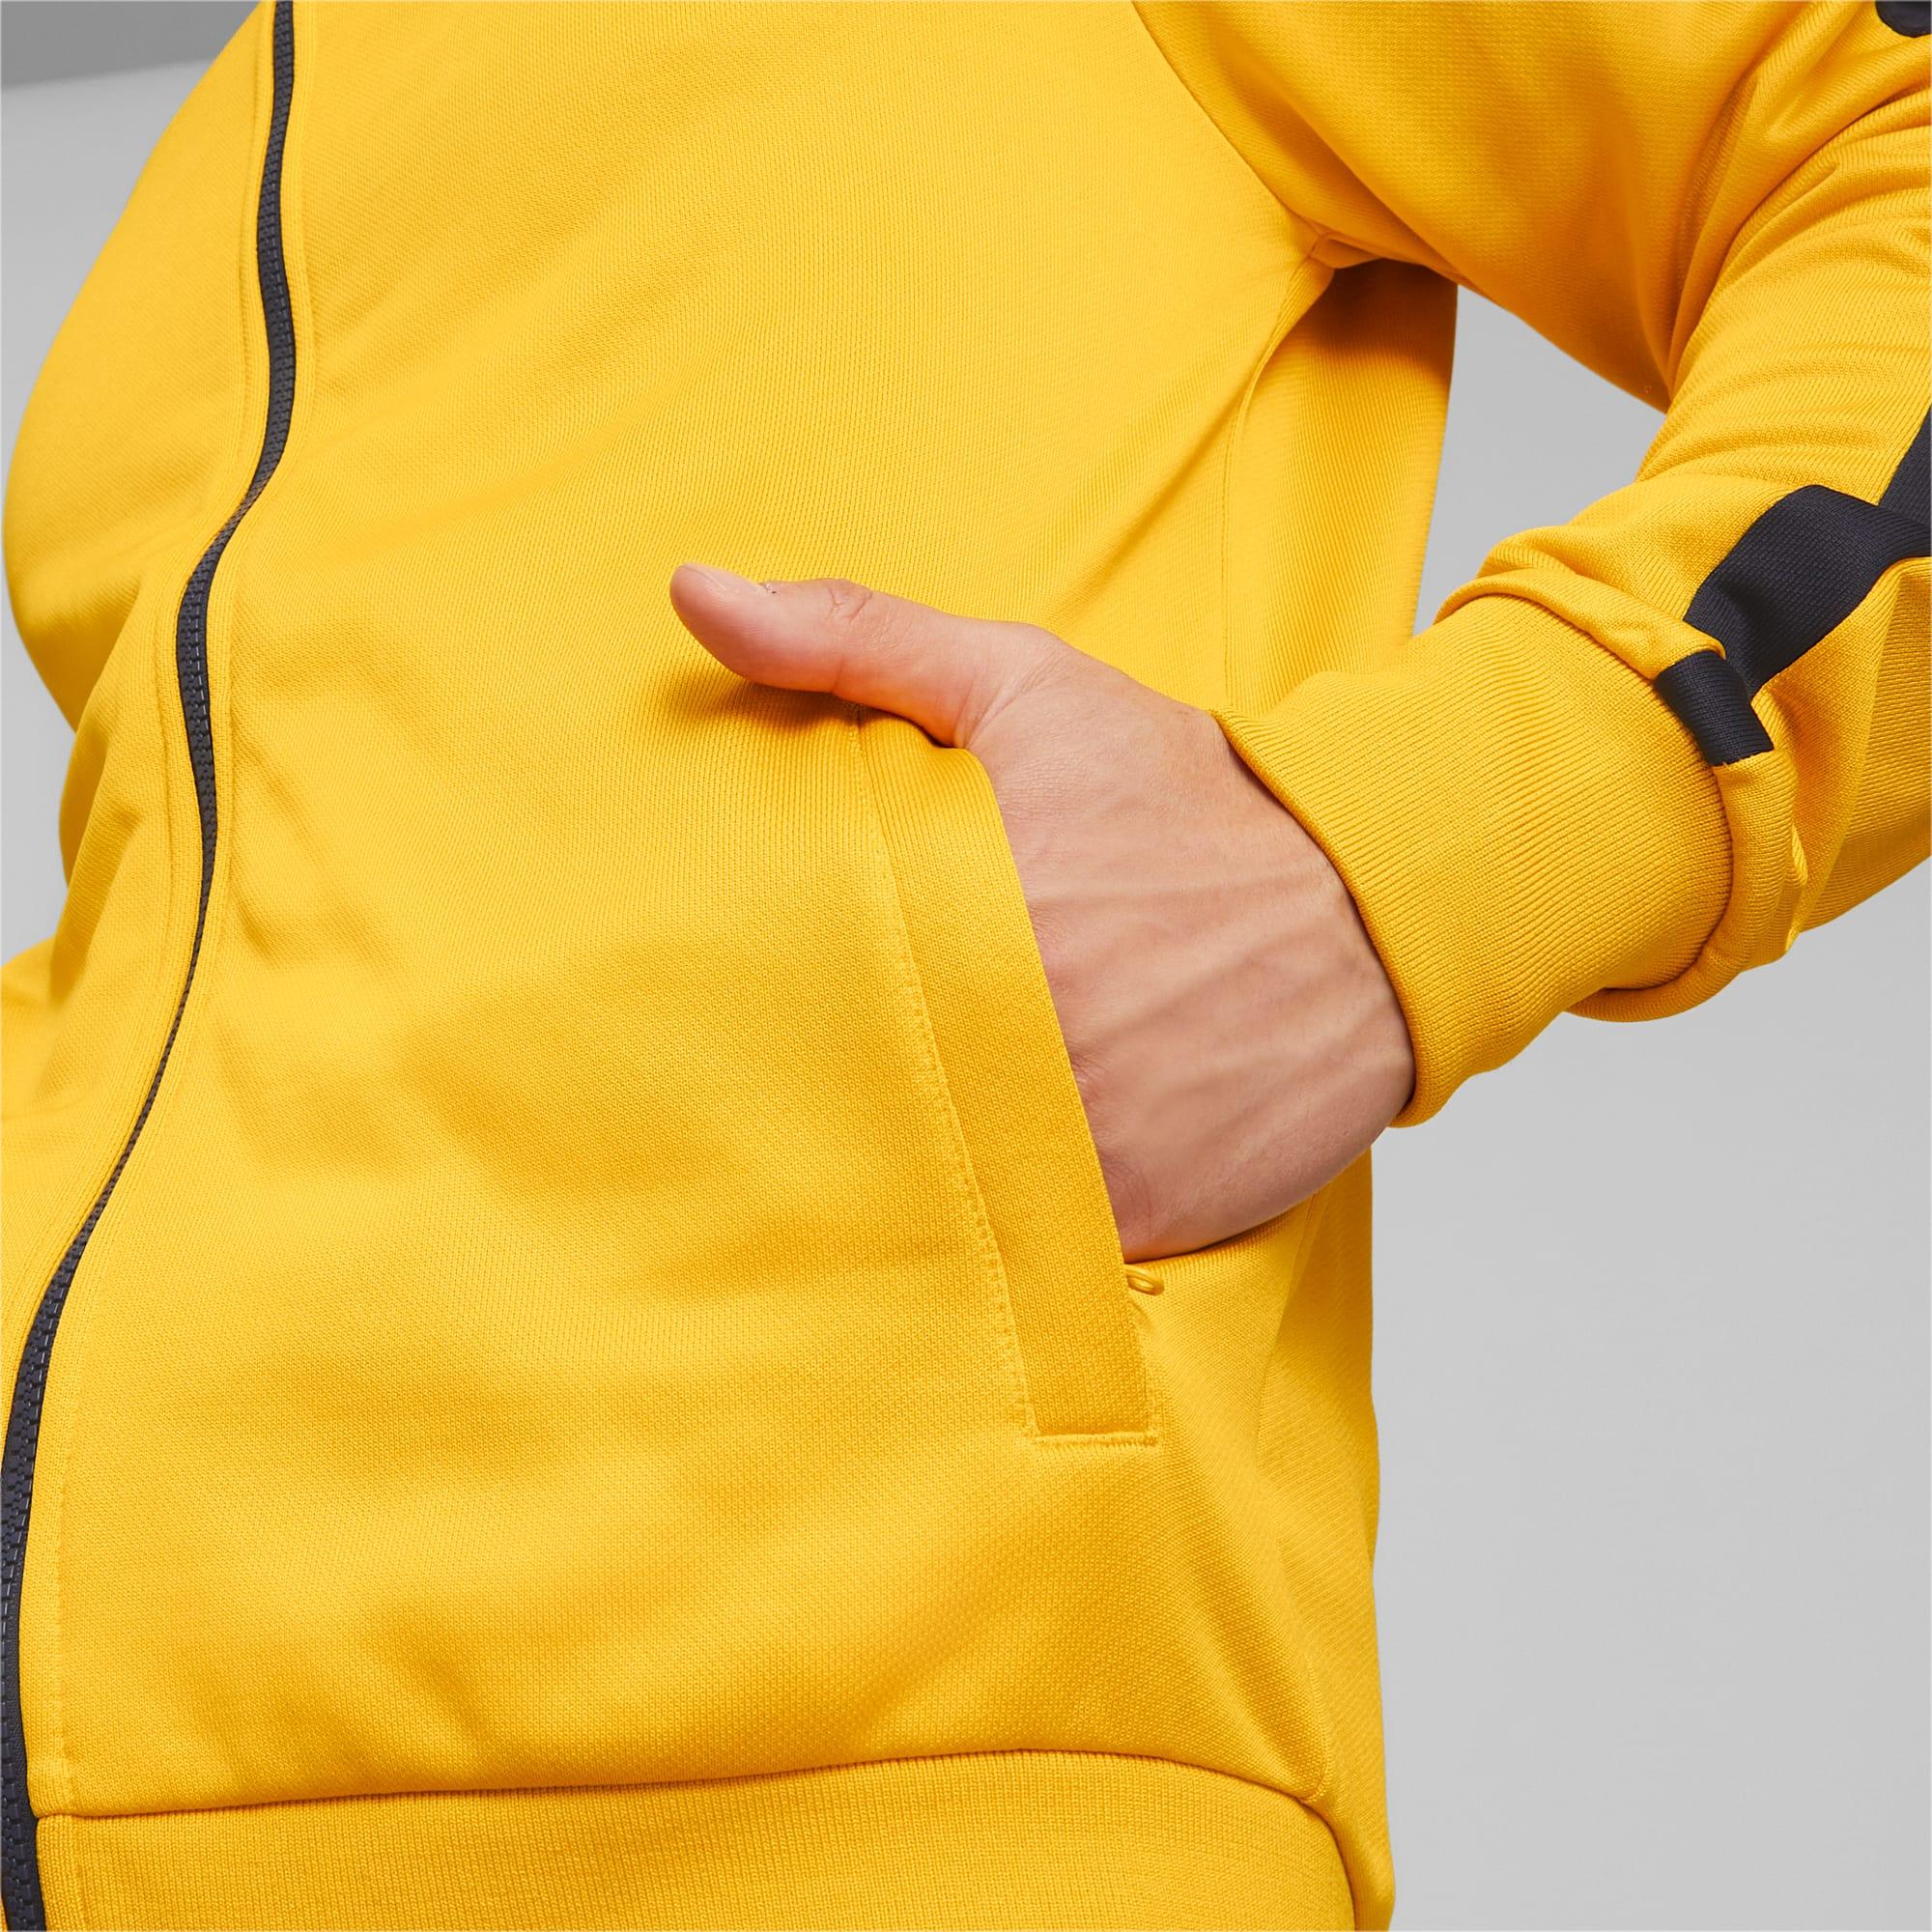 PUMA Synthetik Iconic T7 Trainingsjacke in Natur Damen Herren Bekleidung Herren Jacken Freizeitjacken 